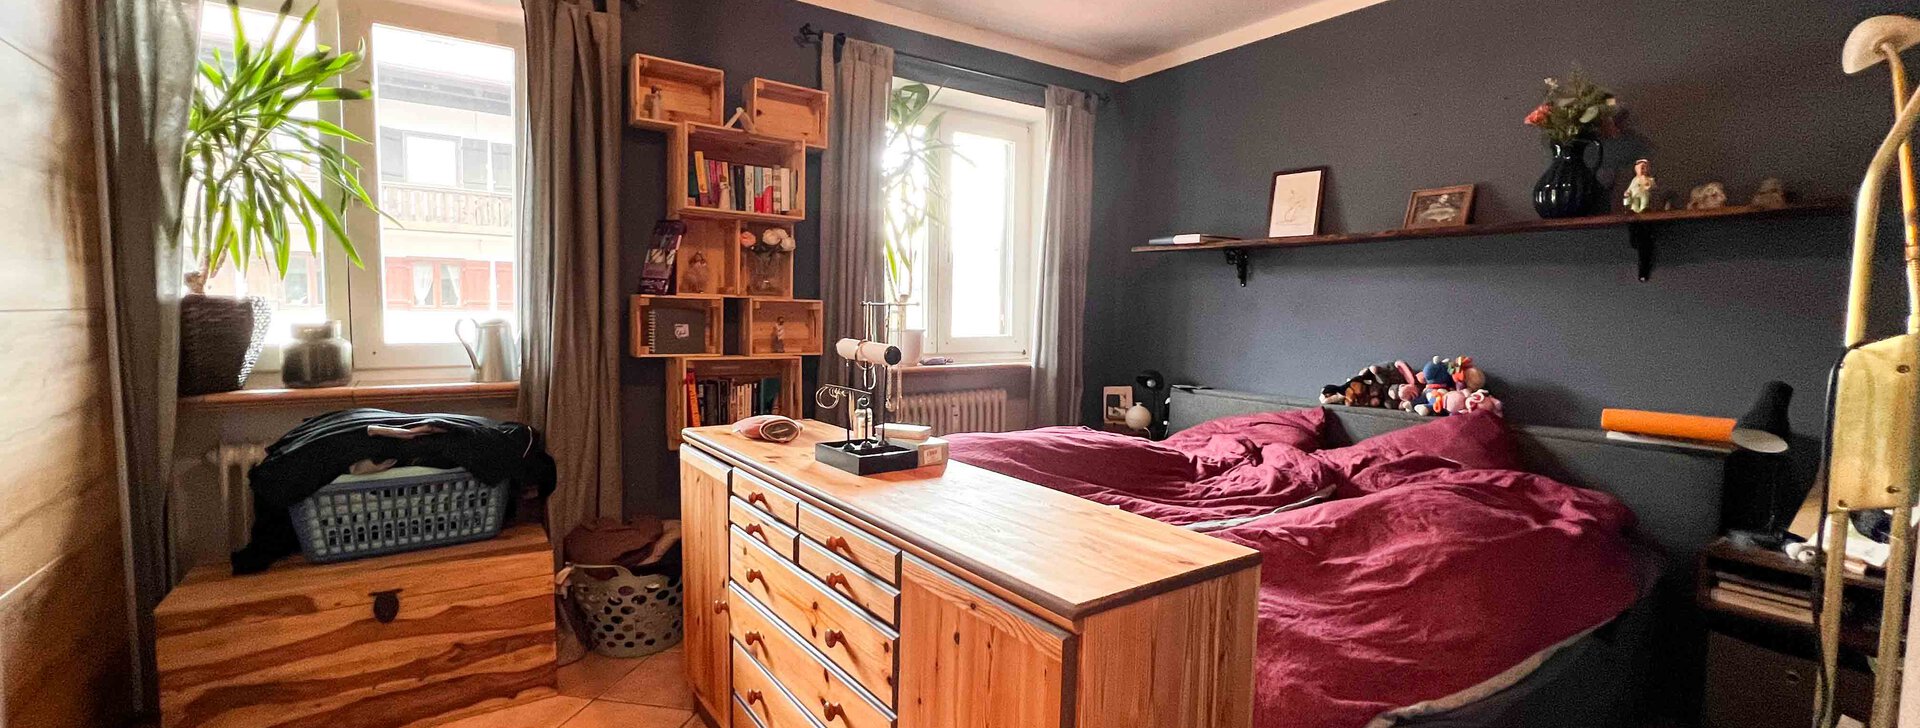 Schlafzimmer, Immobilie kaufen, 2-Zimmer Wohnung in Marquartstein  | © HausBauHaus GmbH